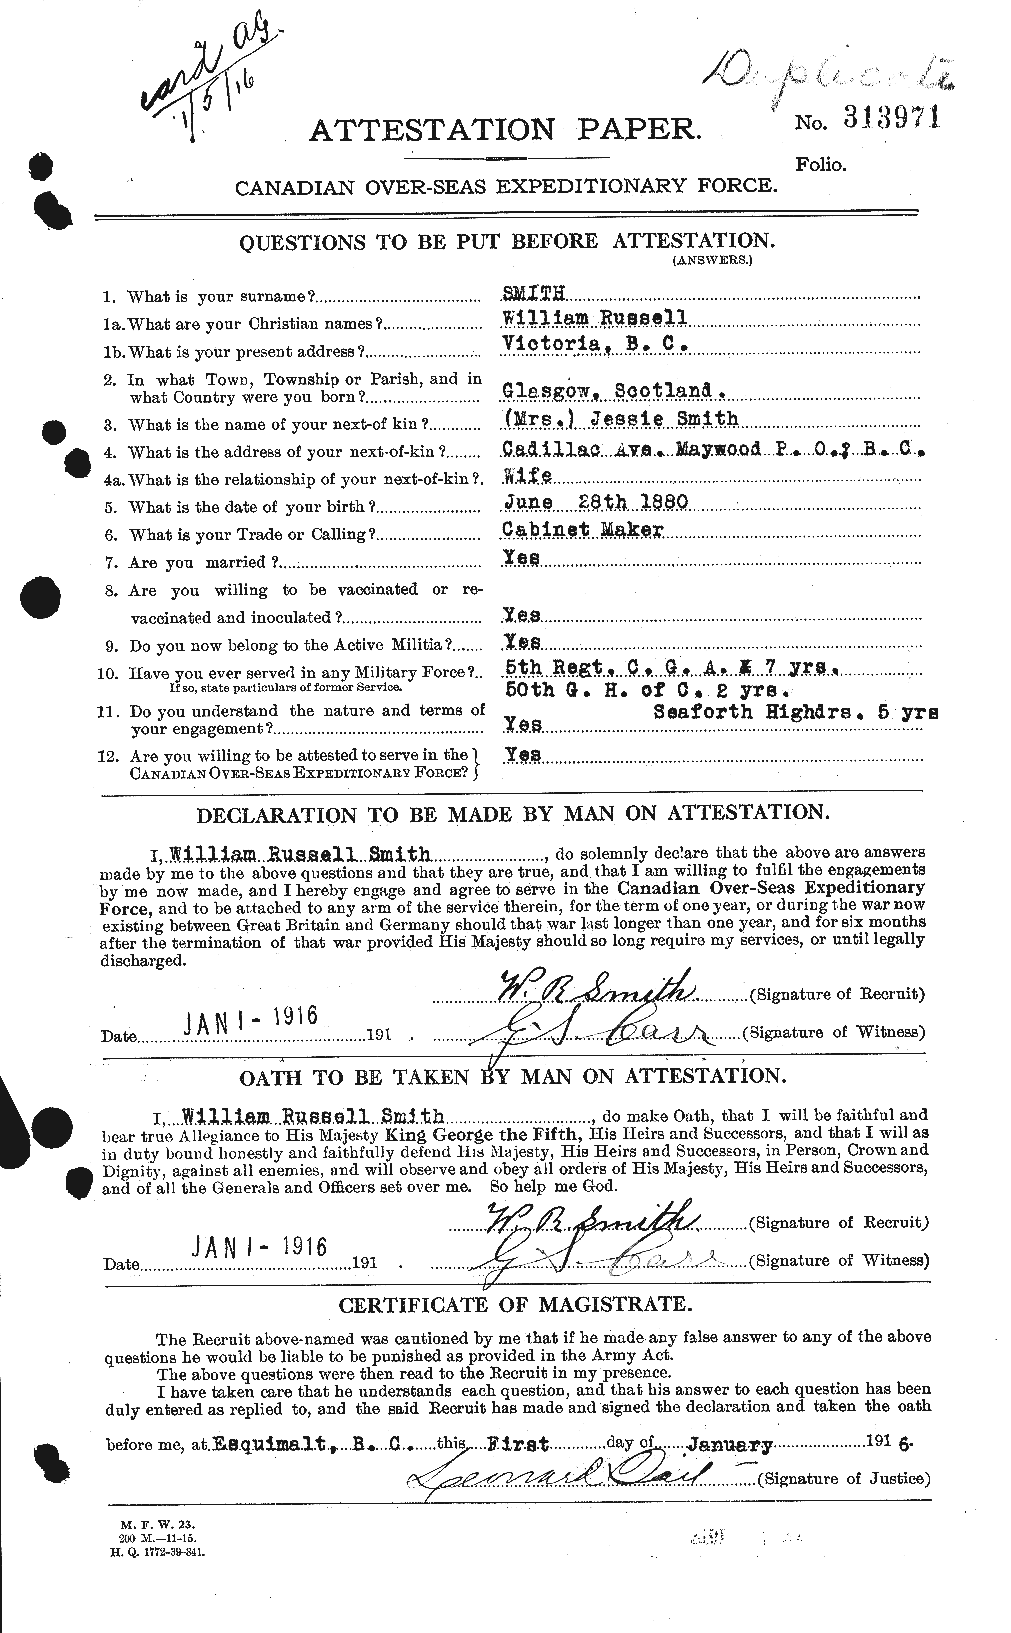 Dossiers du Personnel de la Première Guerre mondiale - CEC 107771a